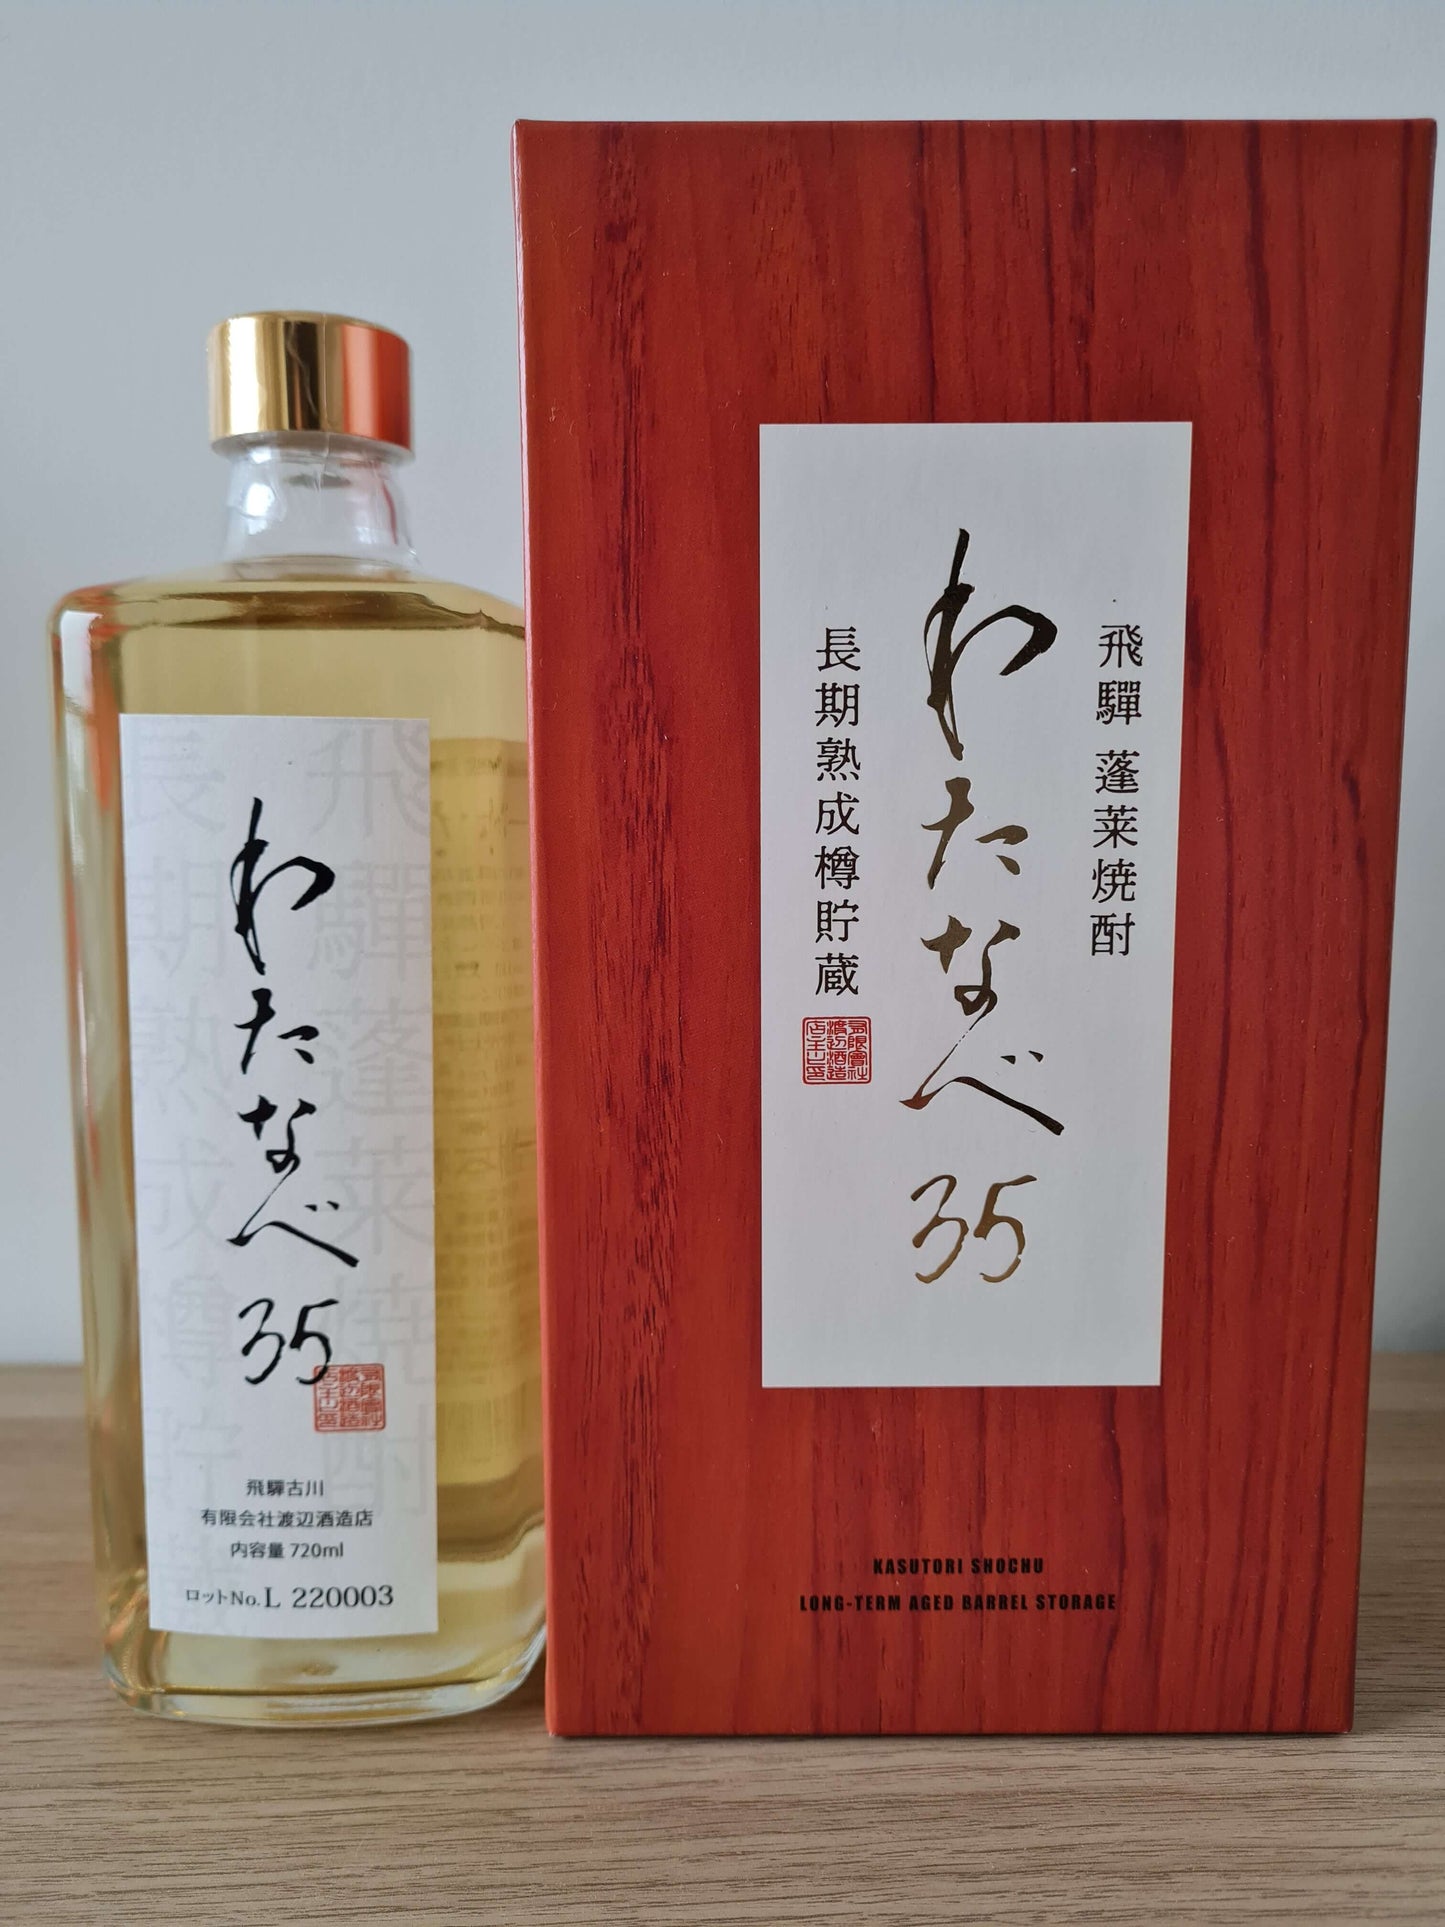 HONKAKU KASUTORI (Sake-Kasu) SHOCHU “WATANABE 35” 35% 720ml